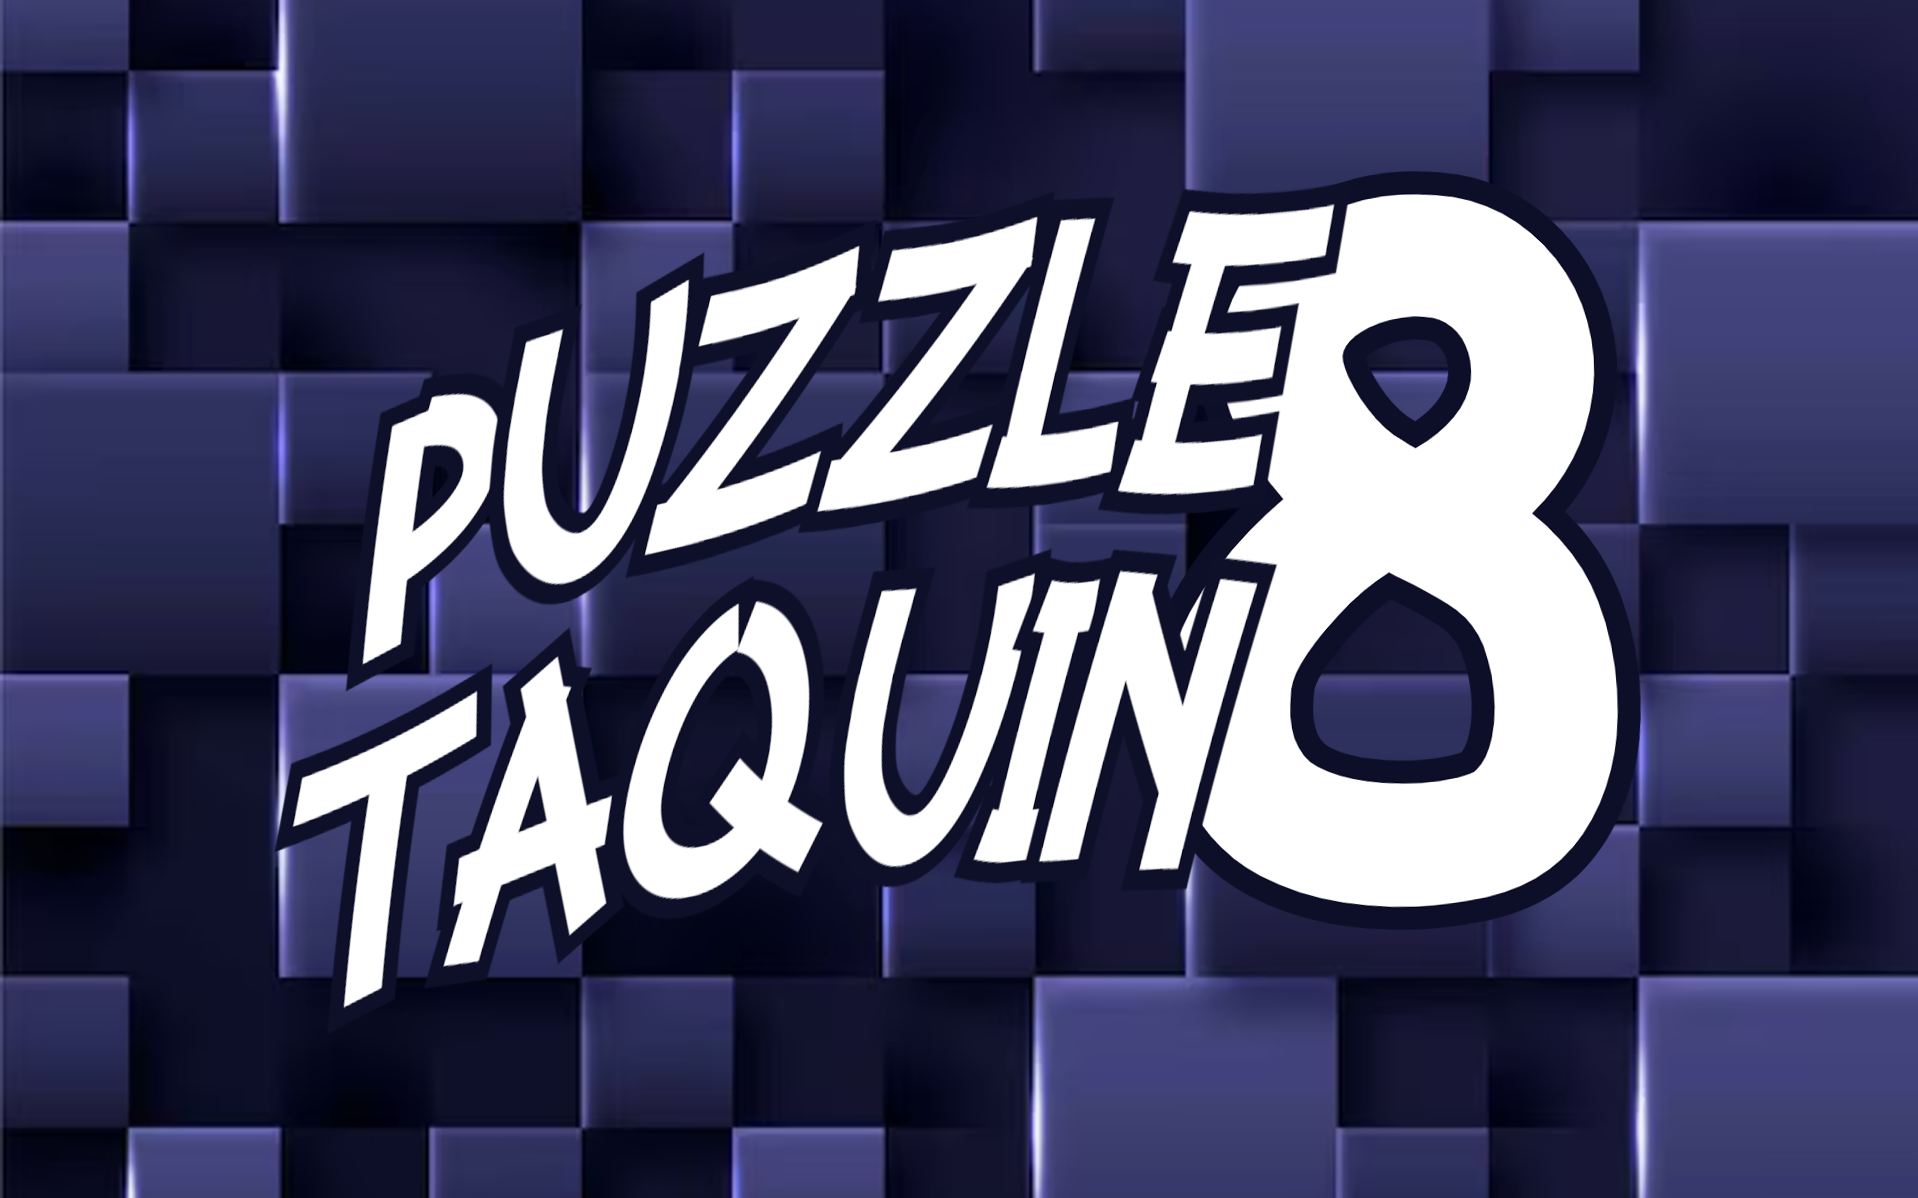 PuzzleTaquin8